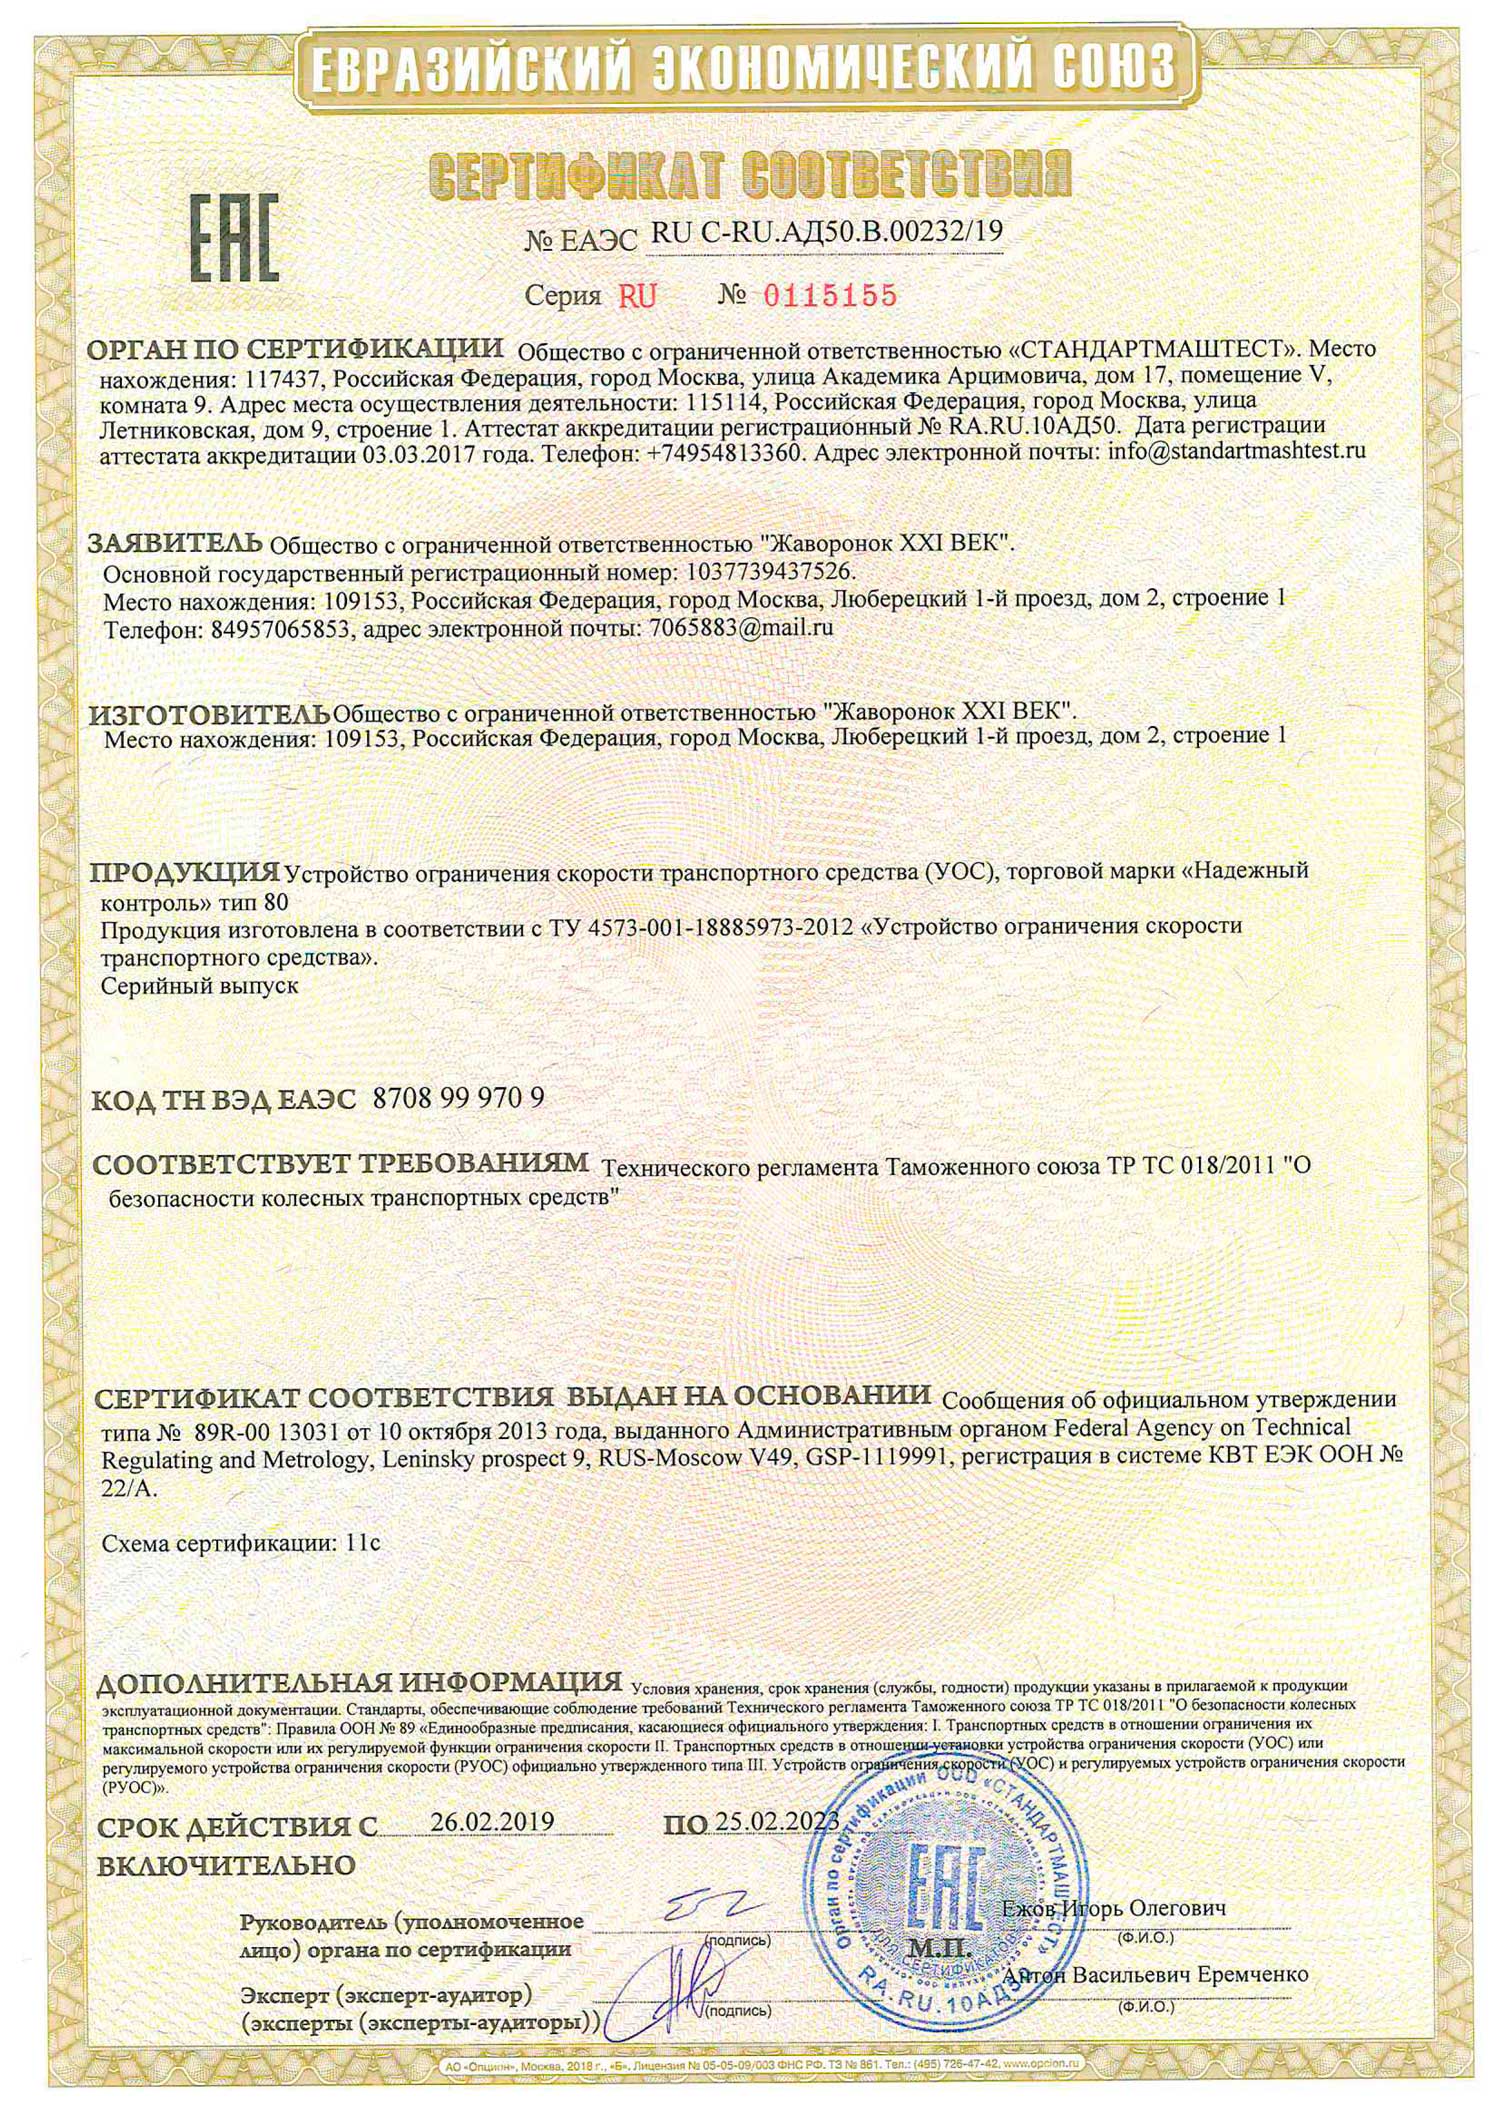 Сертификат таможенного союза